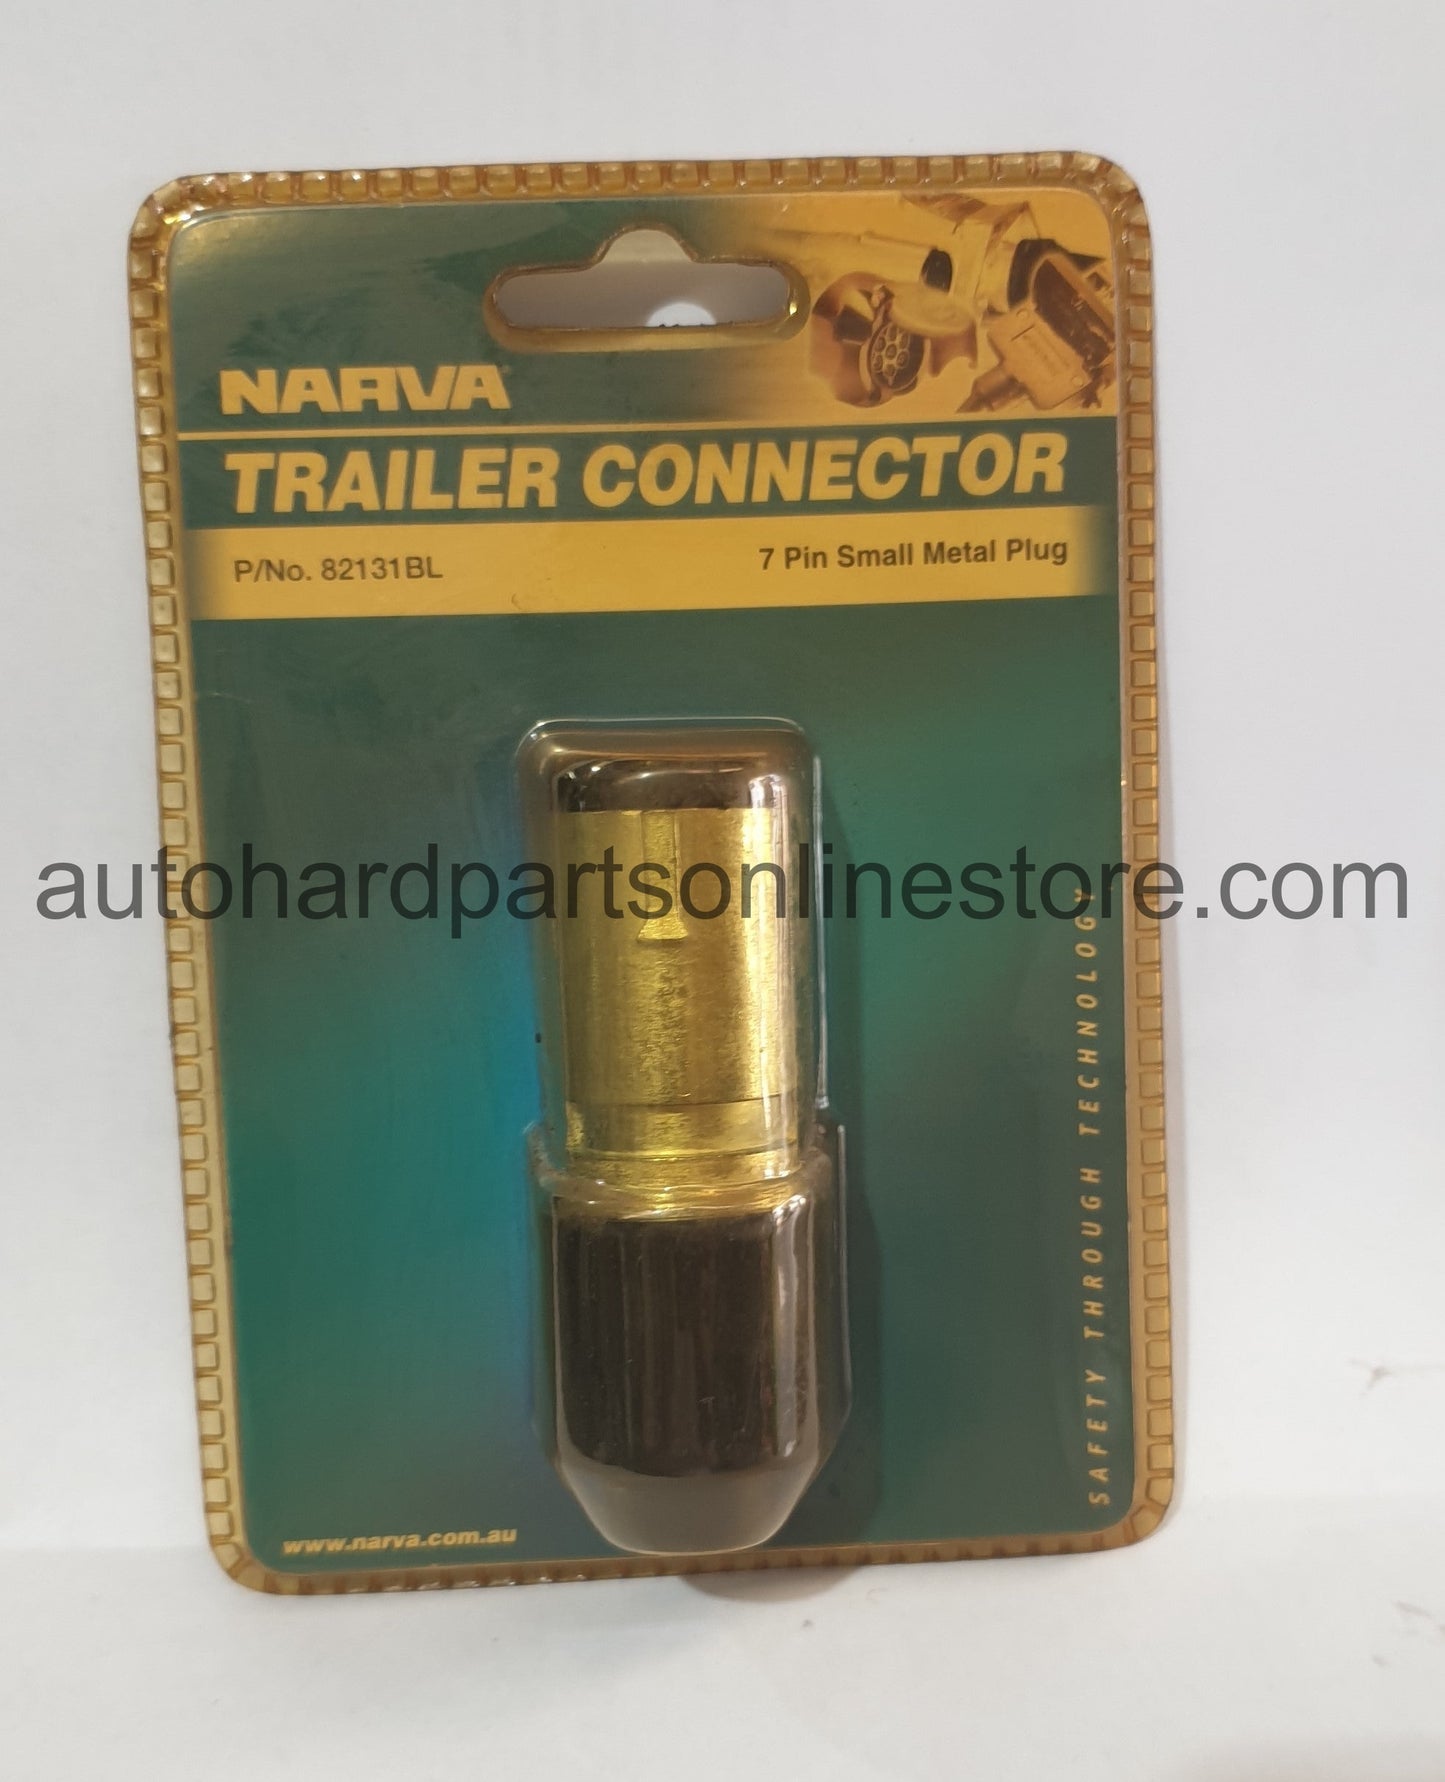 NARVA Trailer Connector 7 Pin Small Plastic Plug Part 82121BL